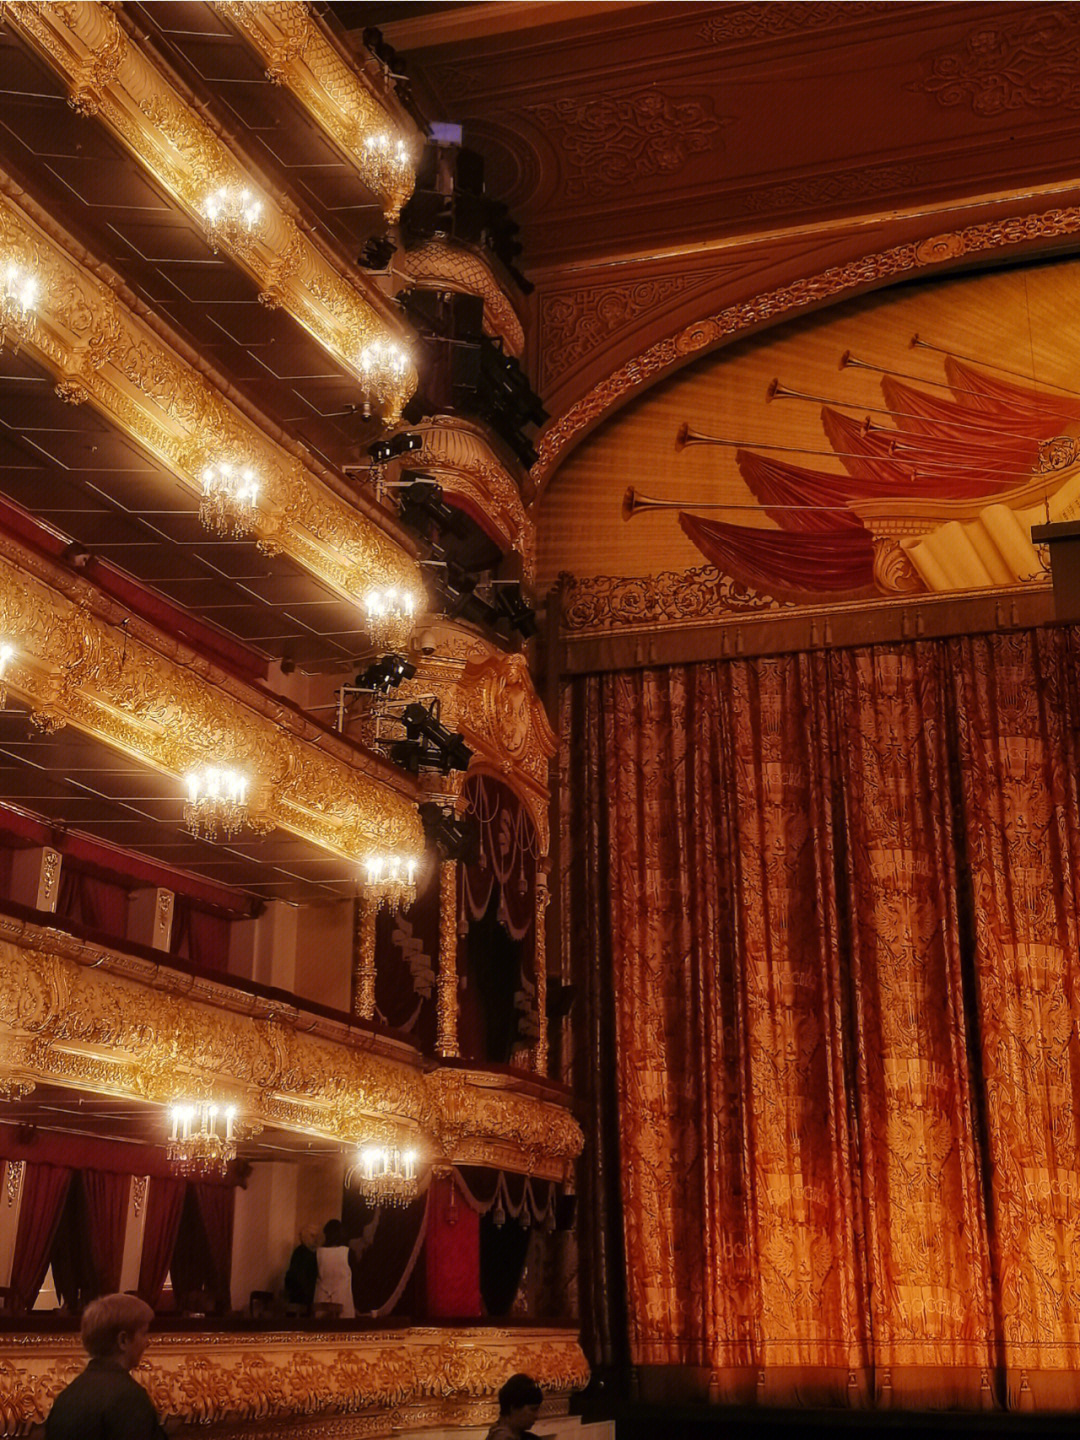 莫斯科大剧院可以说是很华丽了